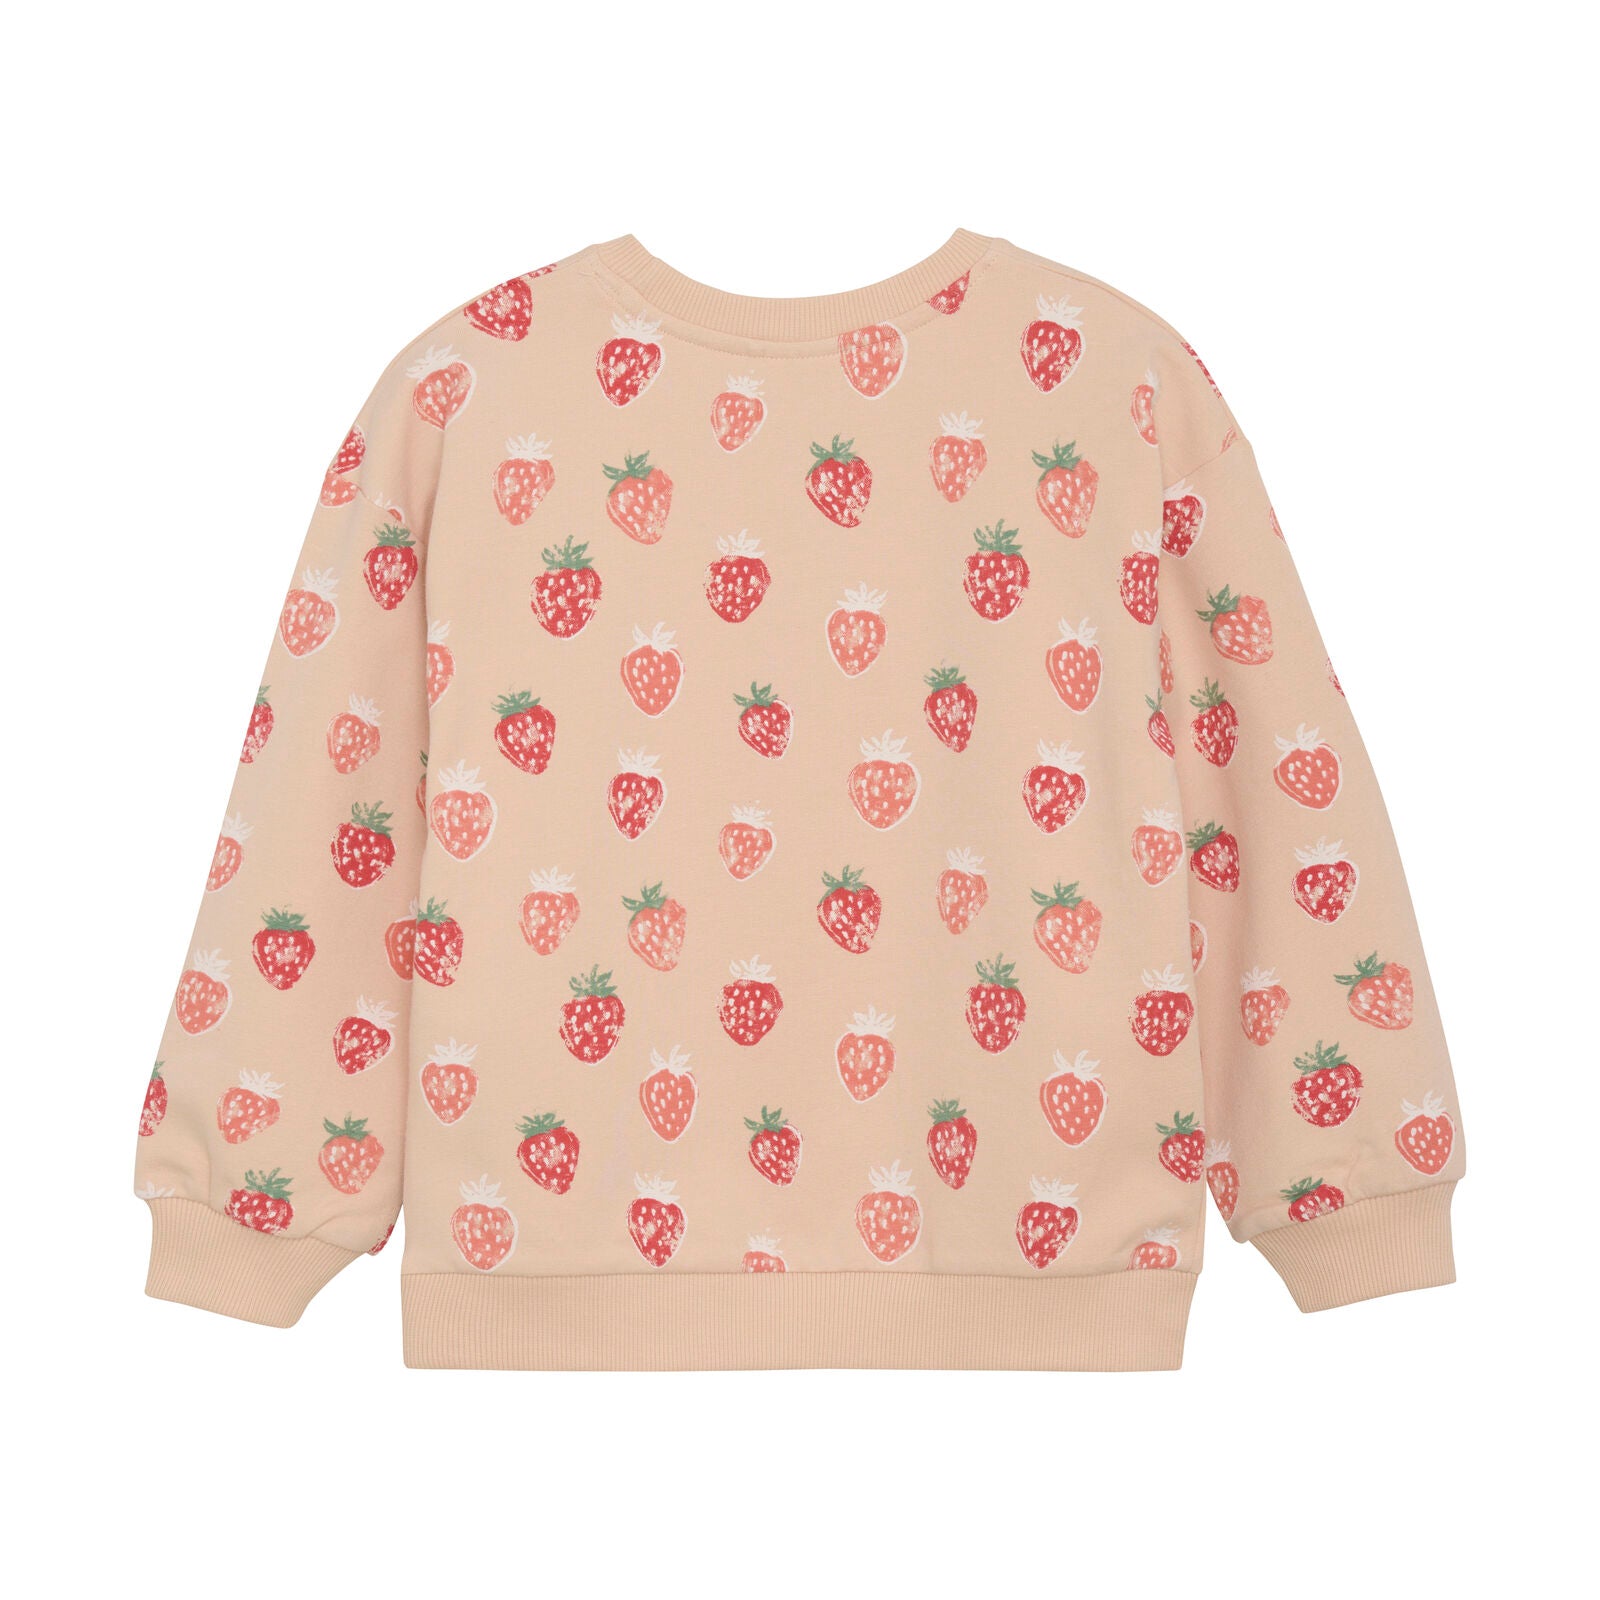 Sweatshirt "Erdbeeren" von Minymo